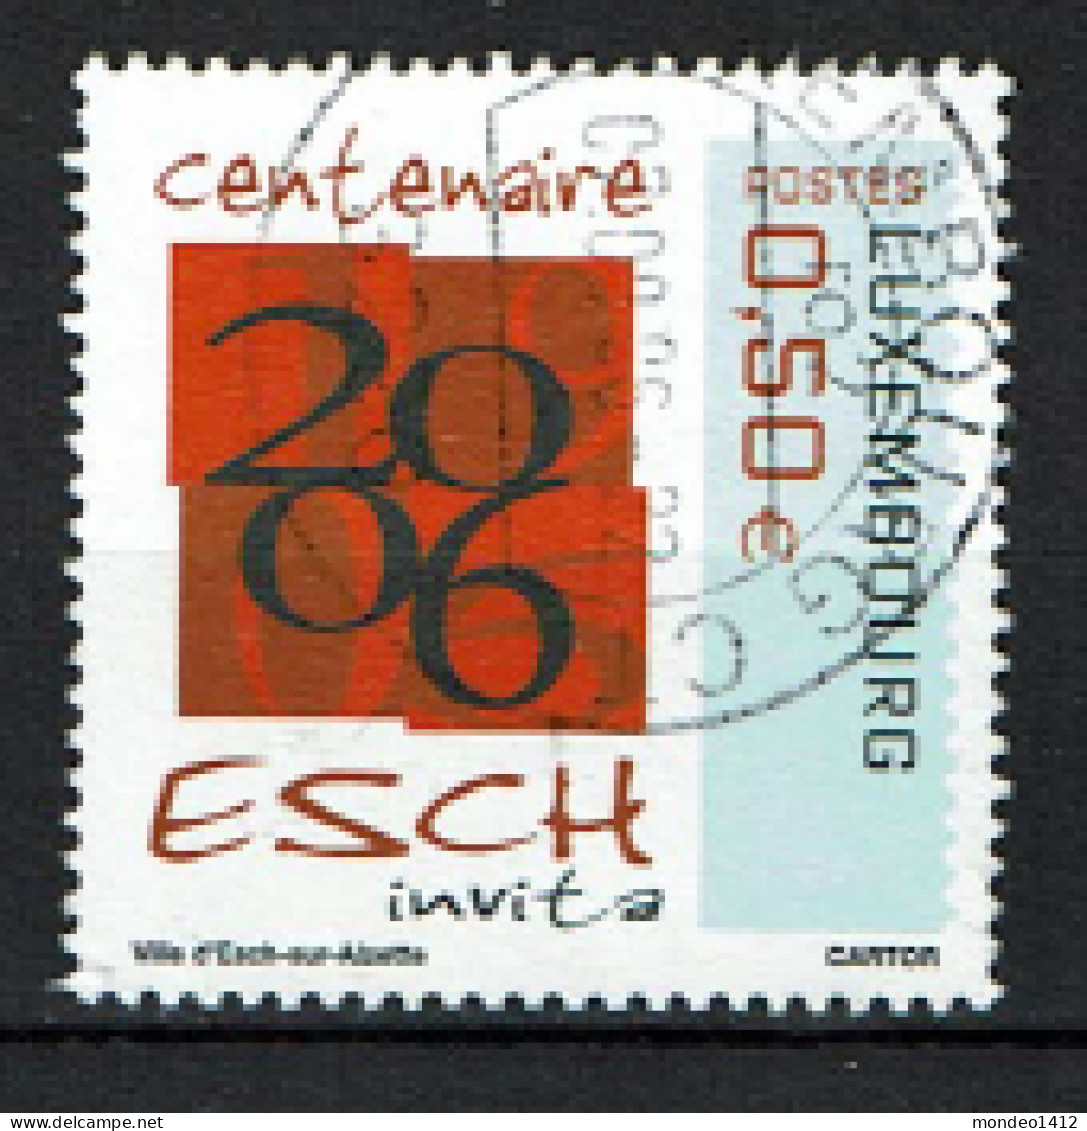 Luxembourg 2006 - YT 1658 - Centenaire D'Esch, Esch Centenary - Used Stamps